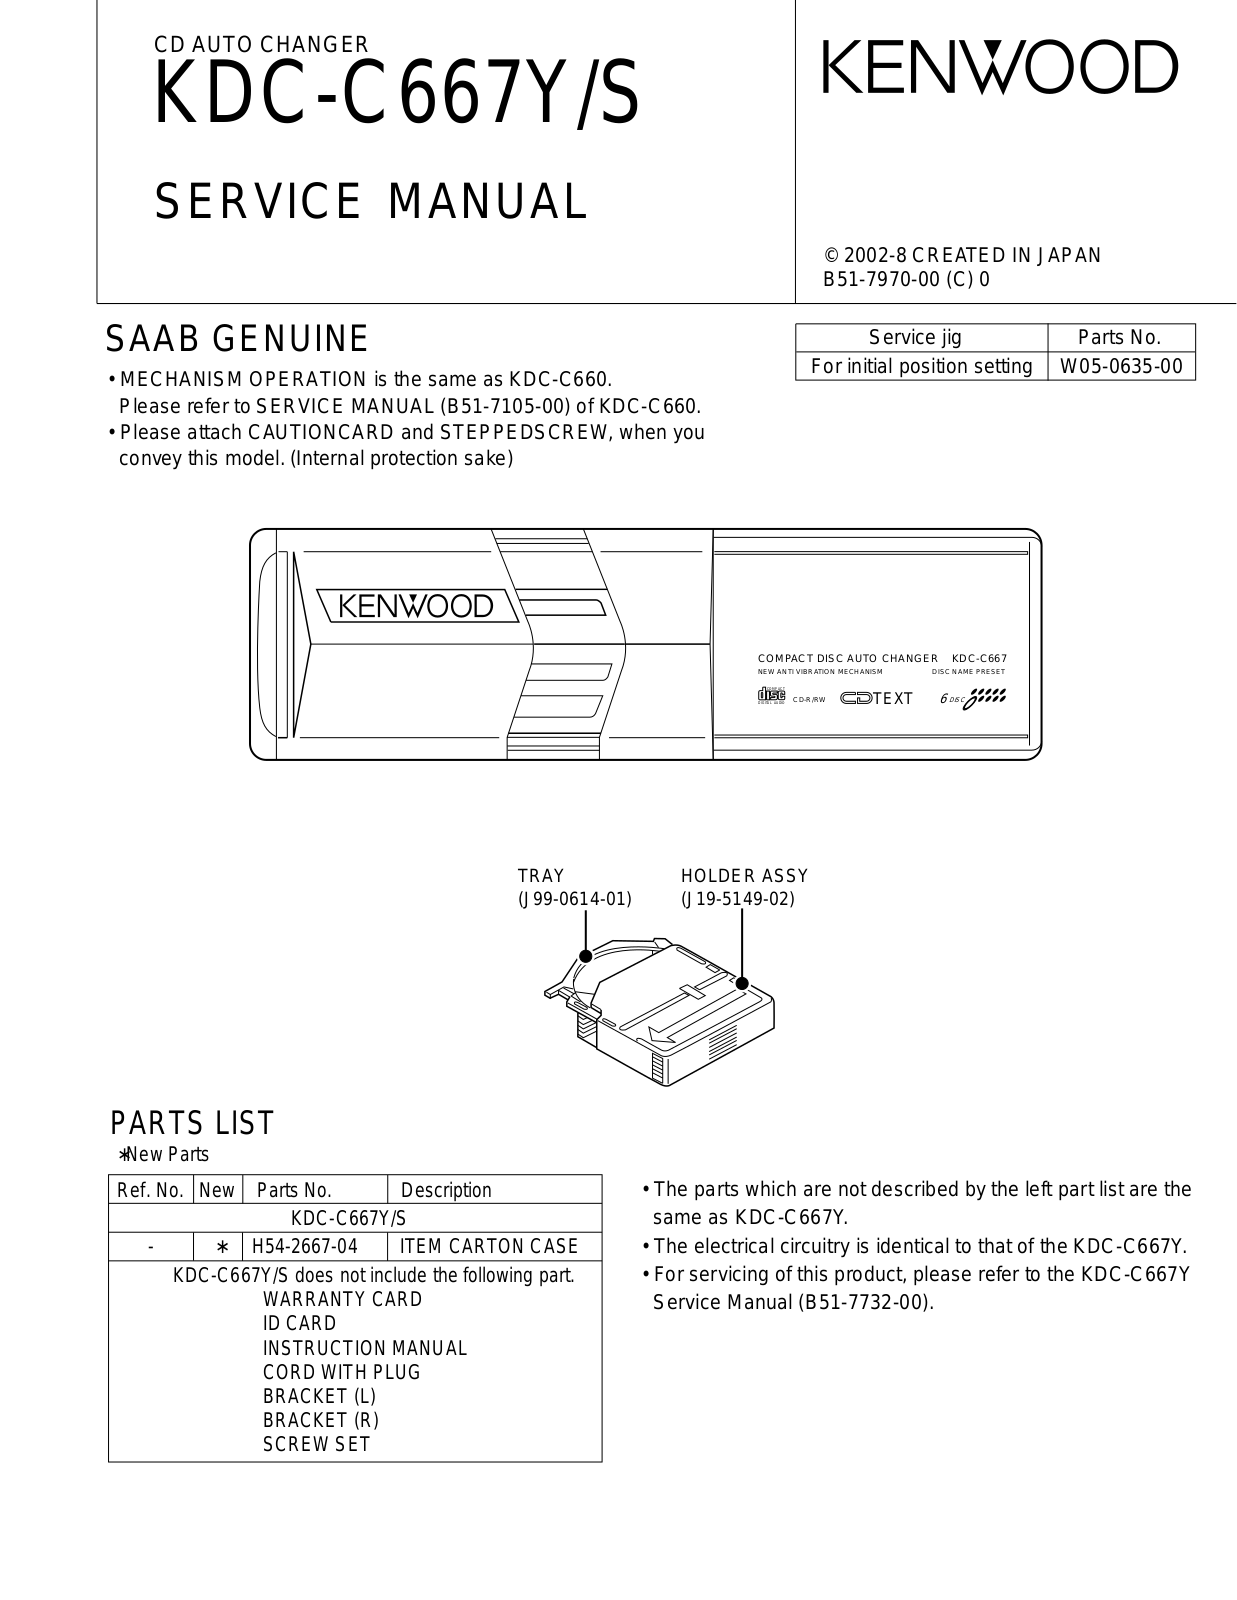 Kenwood KDC-C667Y Service Manual